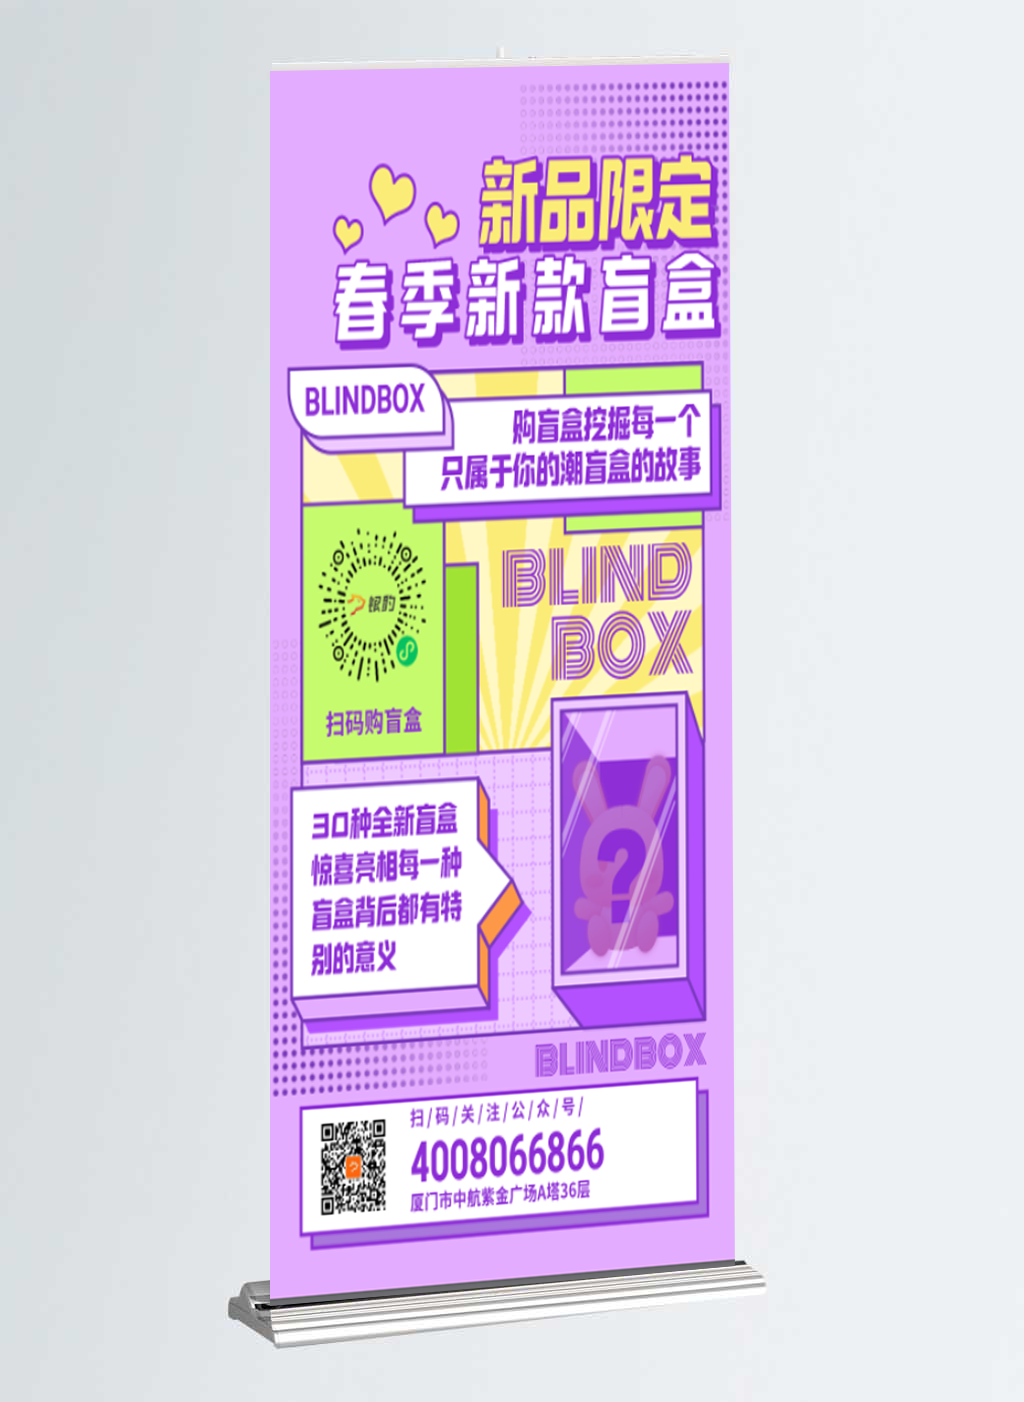 盲盒福袋-银豹博客